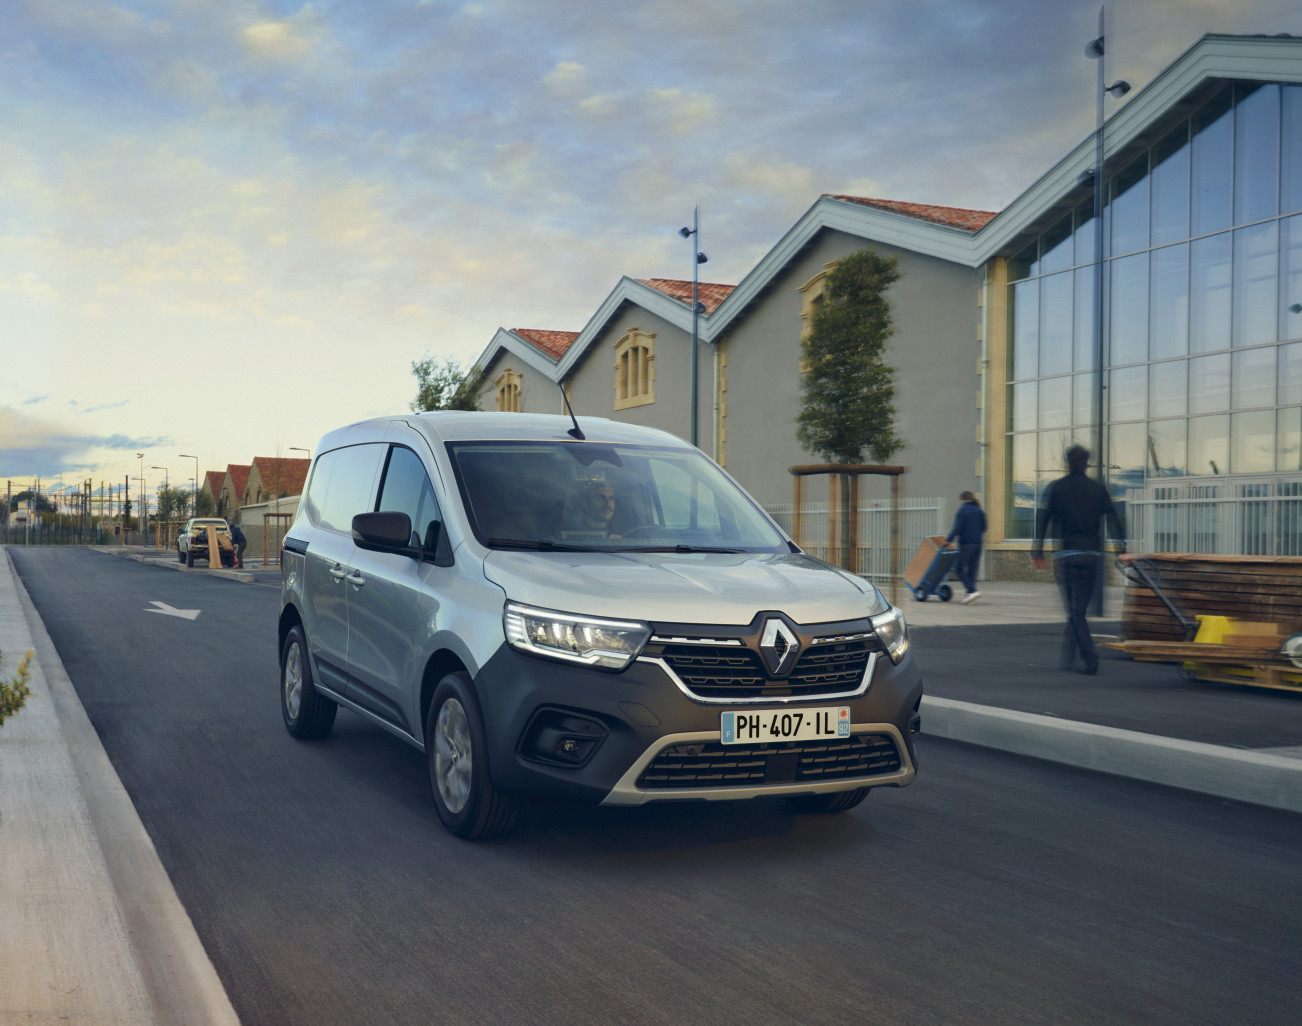 Renault décrit le style de son Nouveau Kangoo Van comme "athlétique et dynamique". Photo Publicis conseil/Michaël Hanisch.